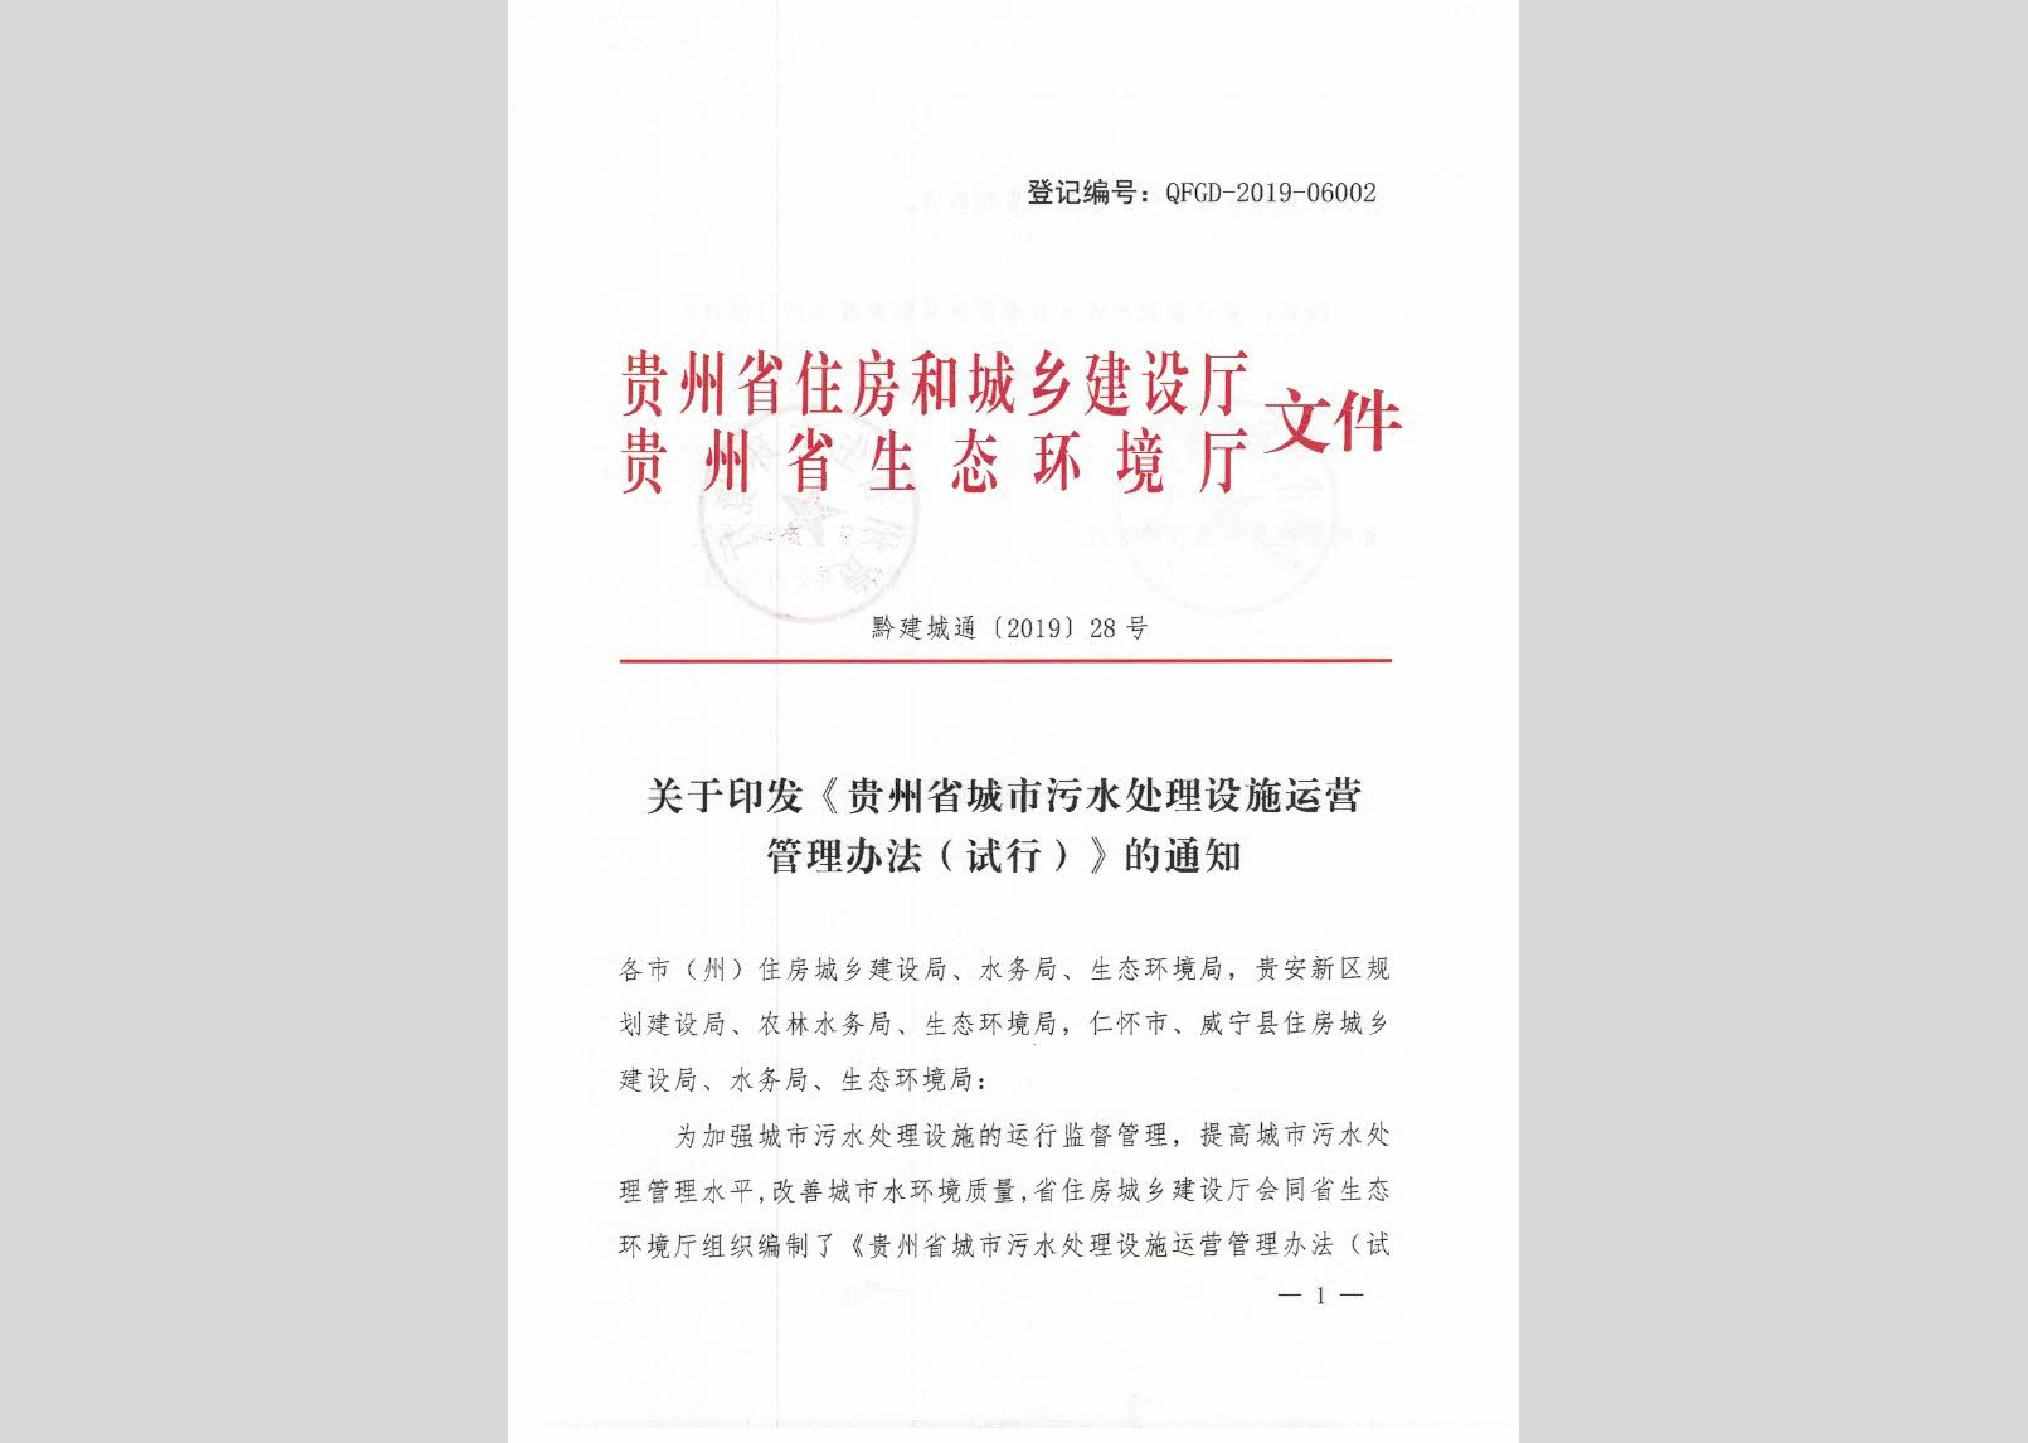 黔建城通[2019]28号：关于印发《贵州省城市污水处理设施运营管理办法（试行）》的通知